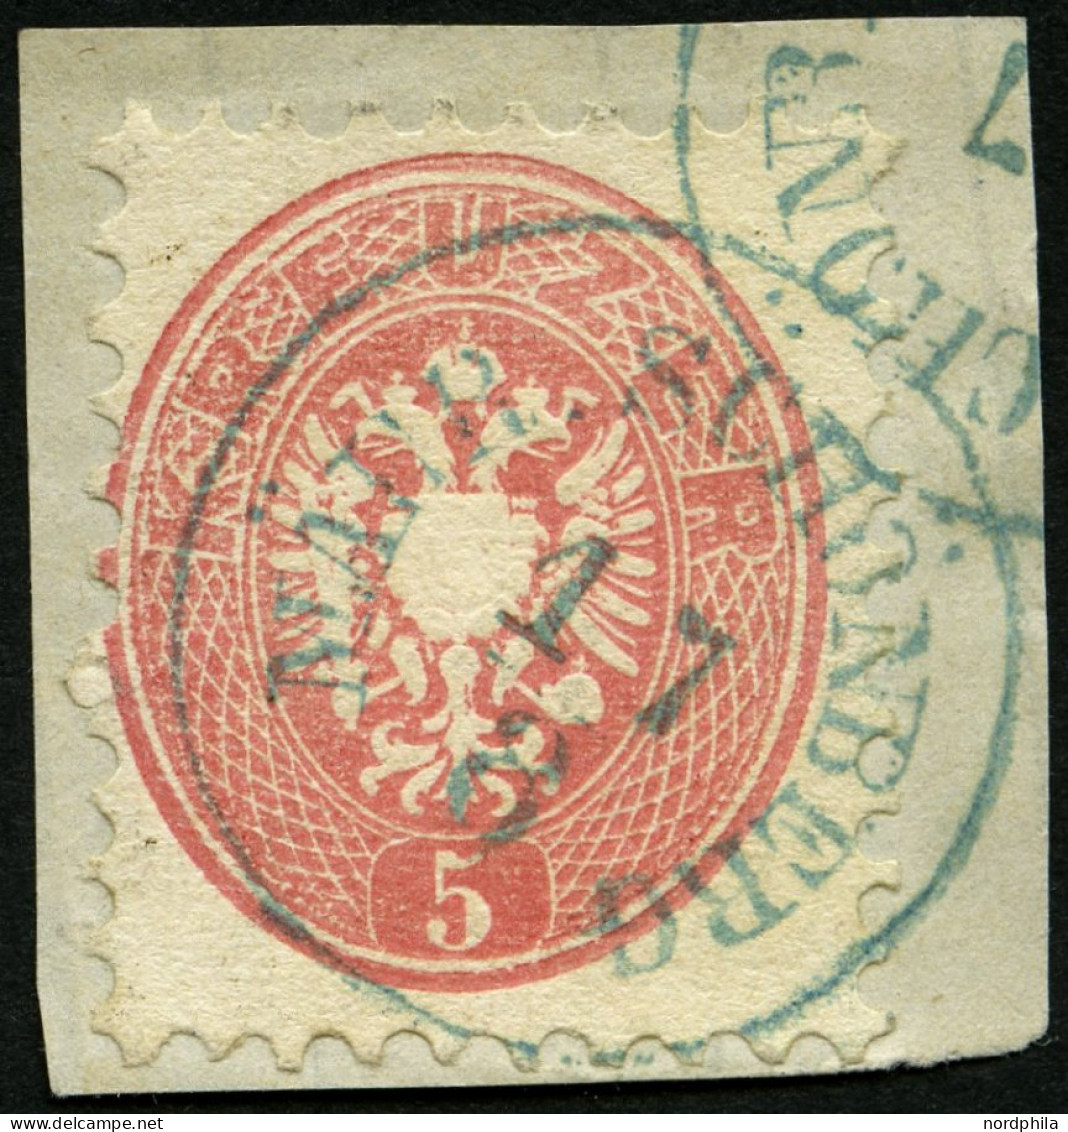 ÖSTERREICH 32 BrfStk, 1863, 5 Kr. Rosa, Blauer K1 MÄHR. SCHÖNBERG, Prachtbriefstück - Used Stamps